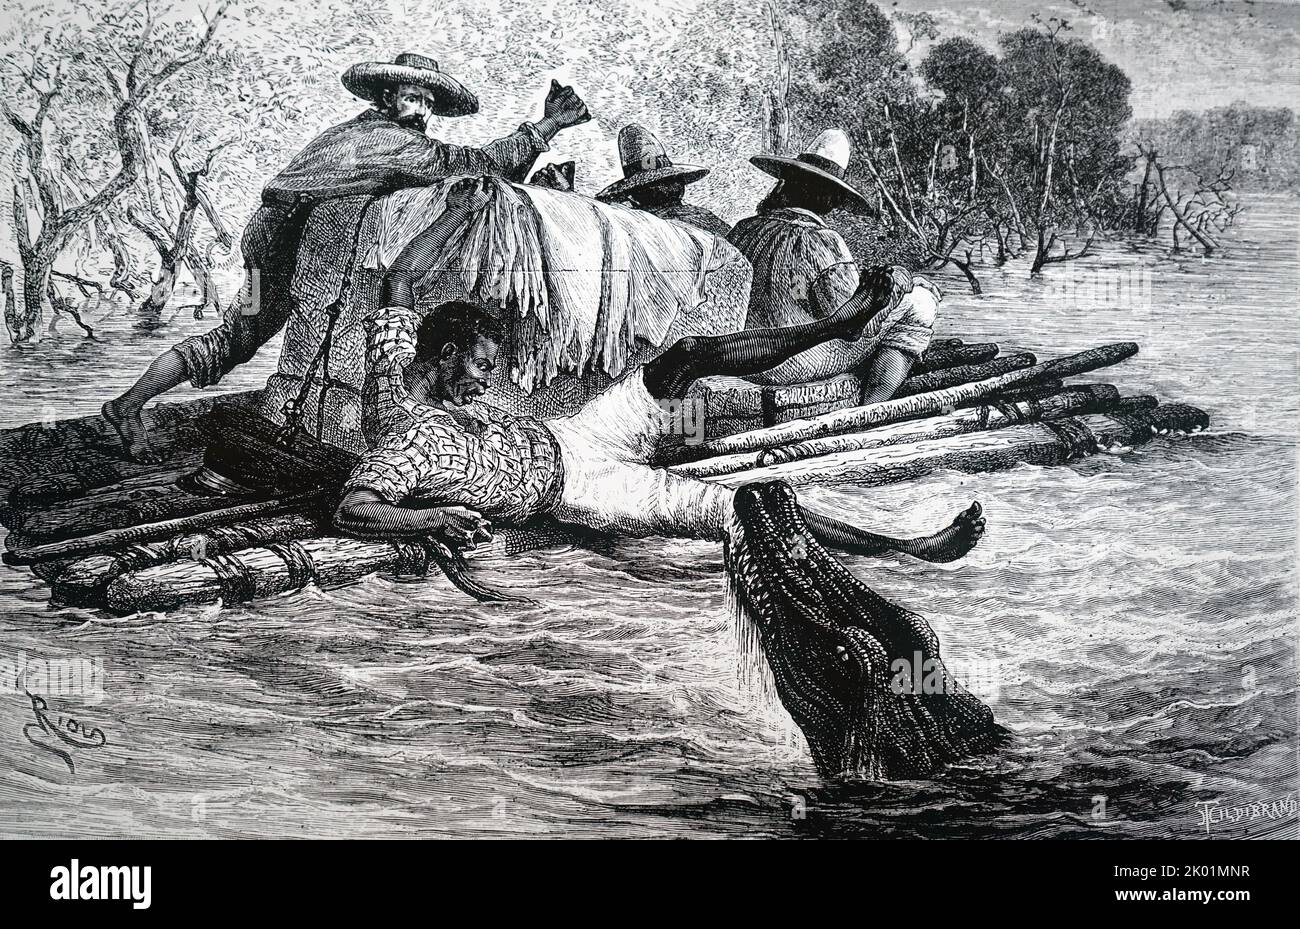 Eine Partei von Crevaux, die von einem Cayman angegriffen wird, während sie den Goyabero River erkundet. Crevaux wurde von Todas-Indianern ermordet. Stockfoto